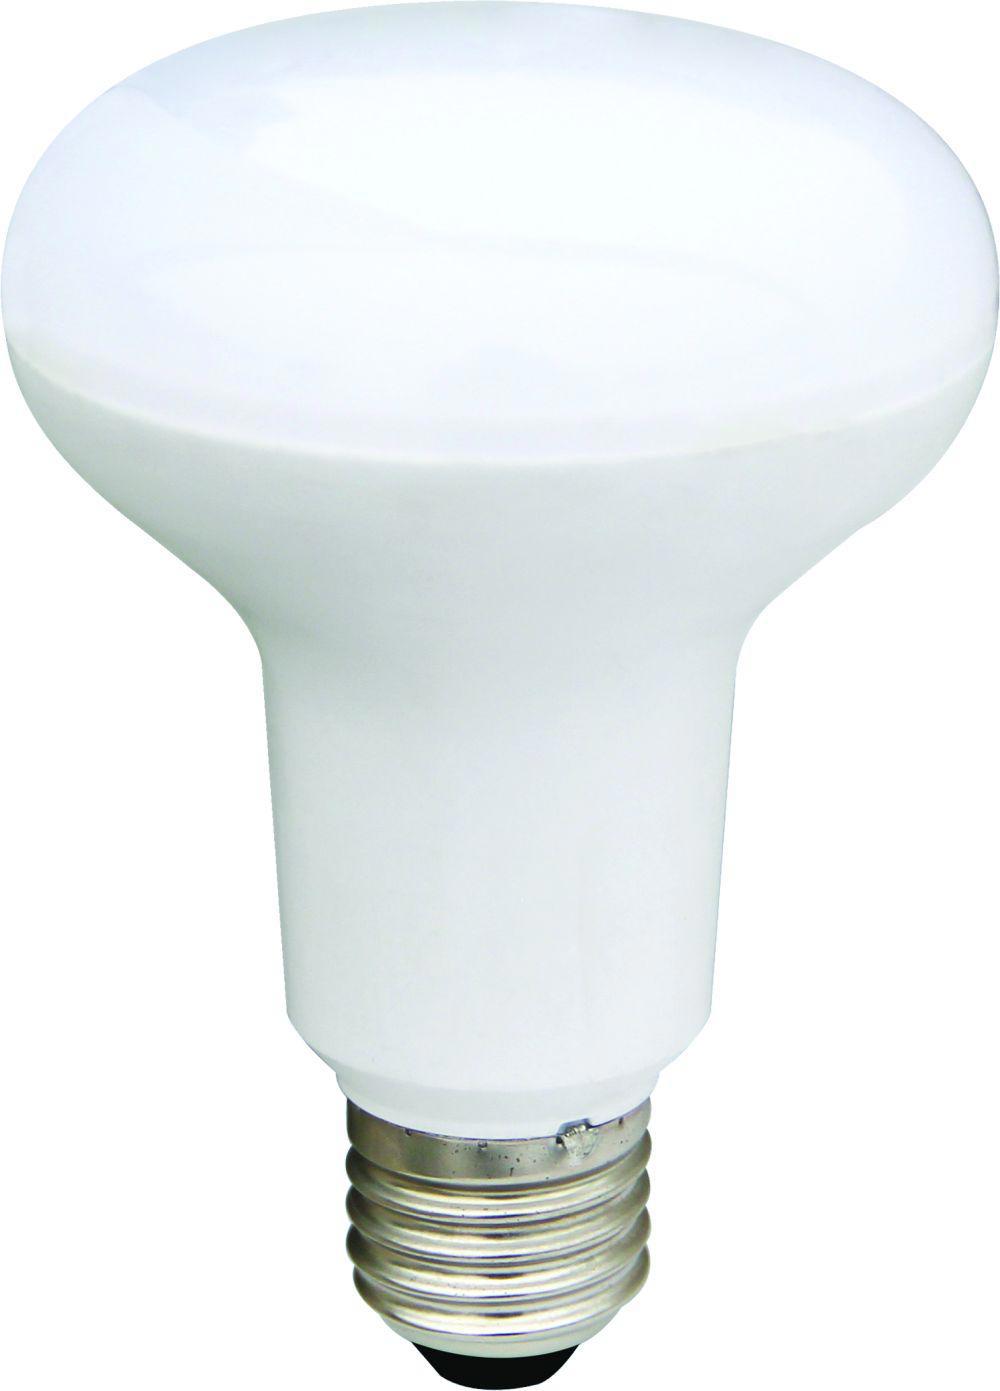 90121174 Лампа Premium светодионая E27 12 Вт рефлекторная 1080 Лм нейтральный свет STLM-0112365 ECOLA